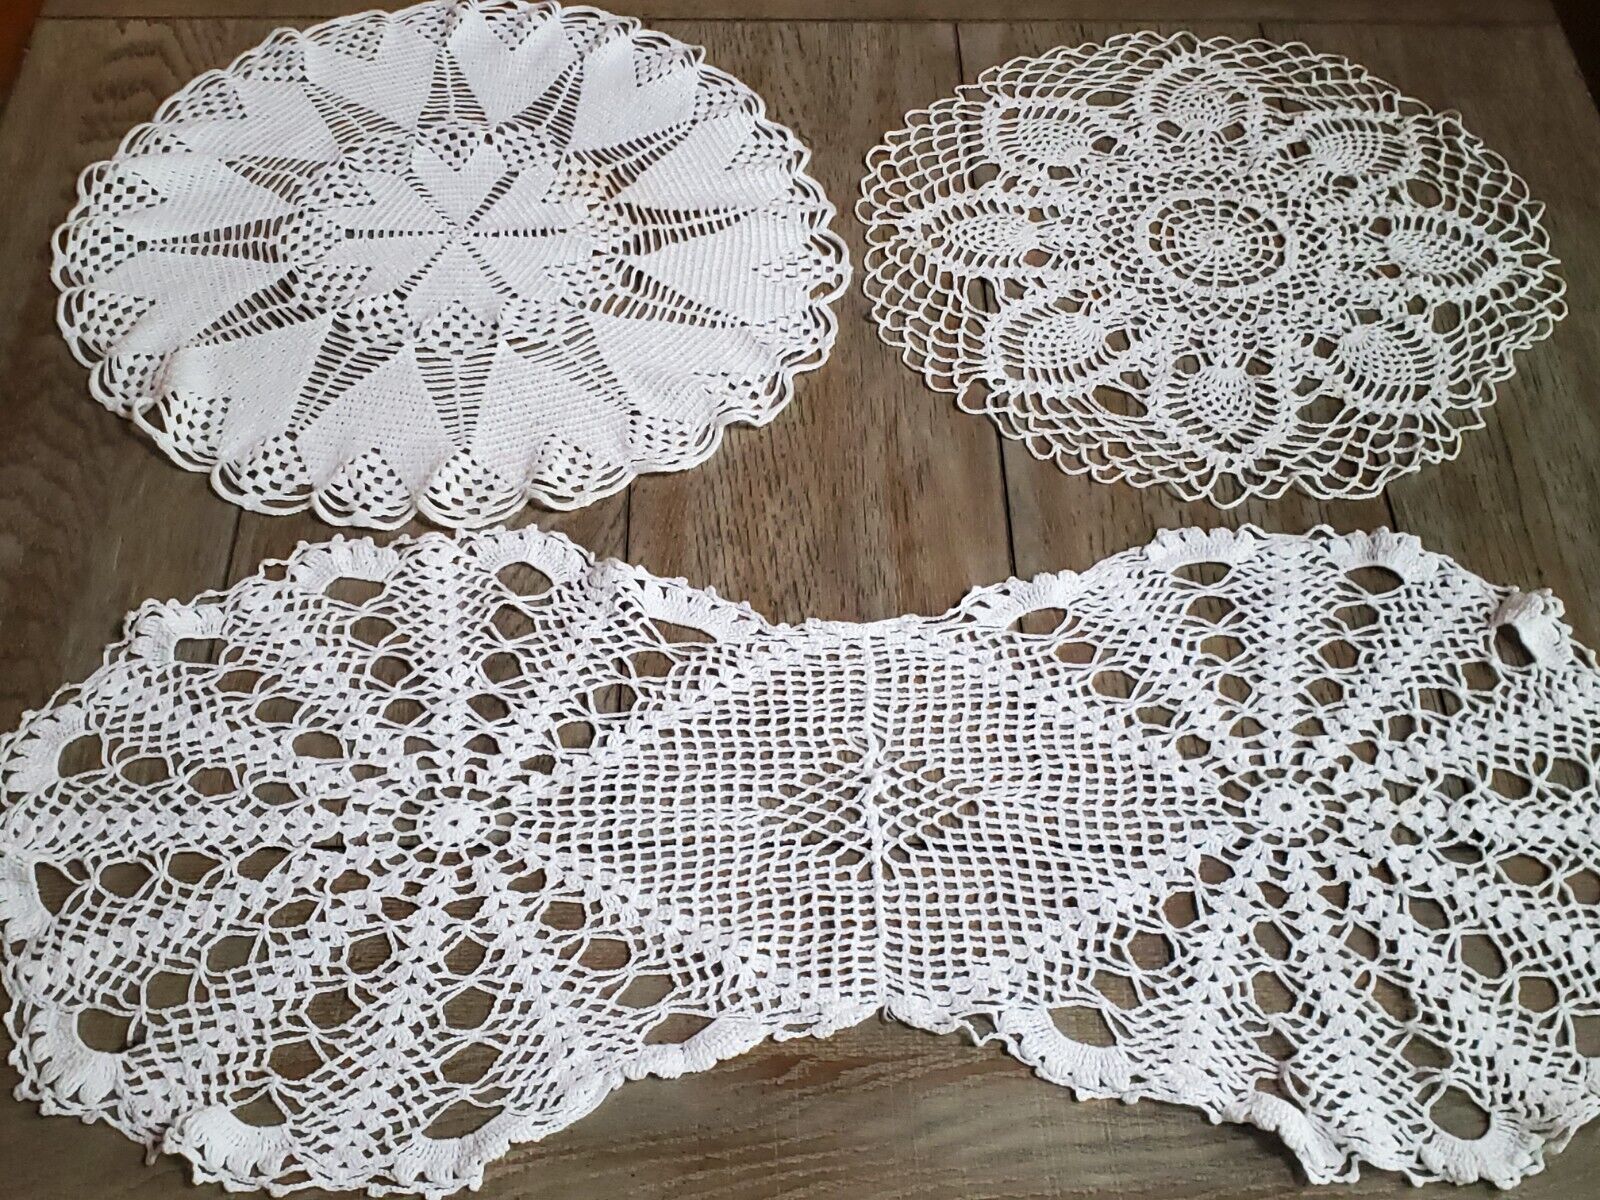 3 LOT Vintage Table Top Crochet Lace DOILIES White